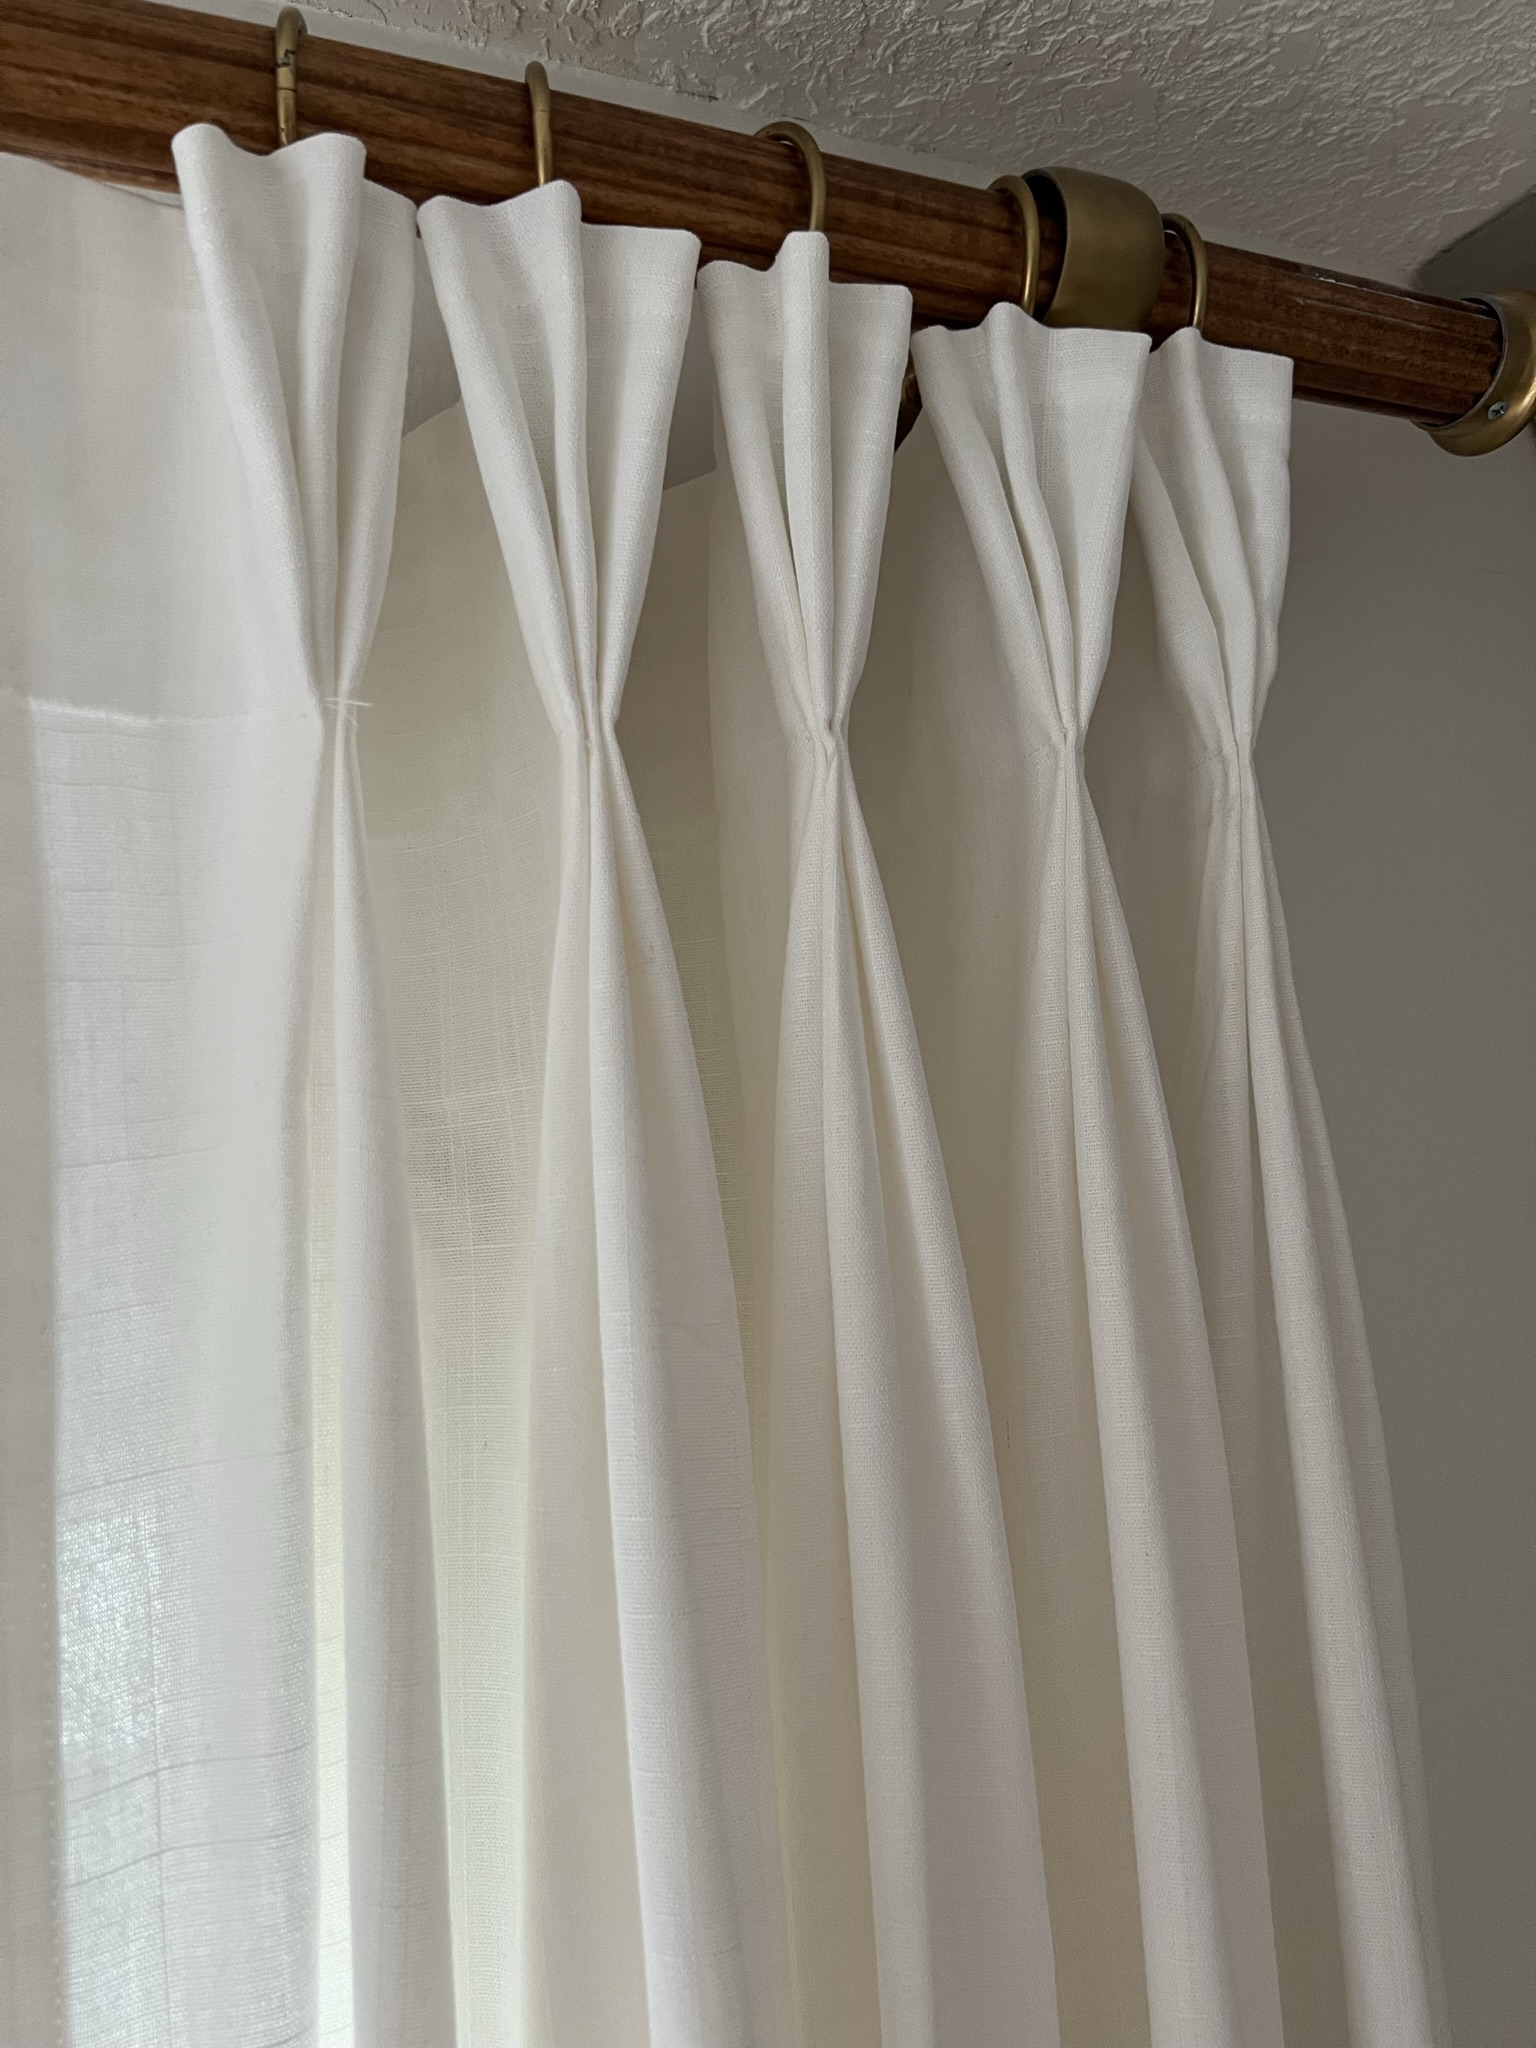 DIY Pinch Pleat Curtains - Erin Zubot Design